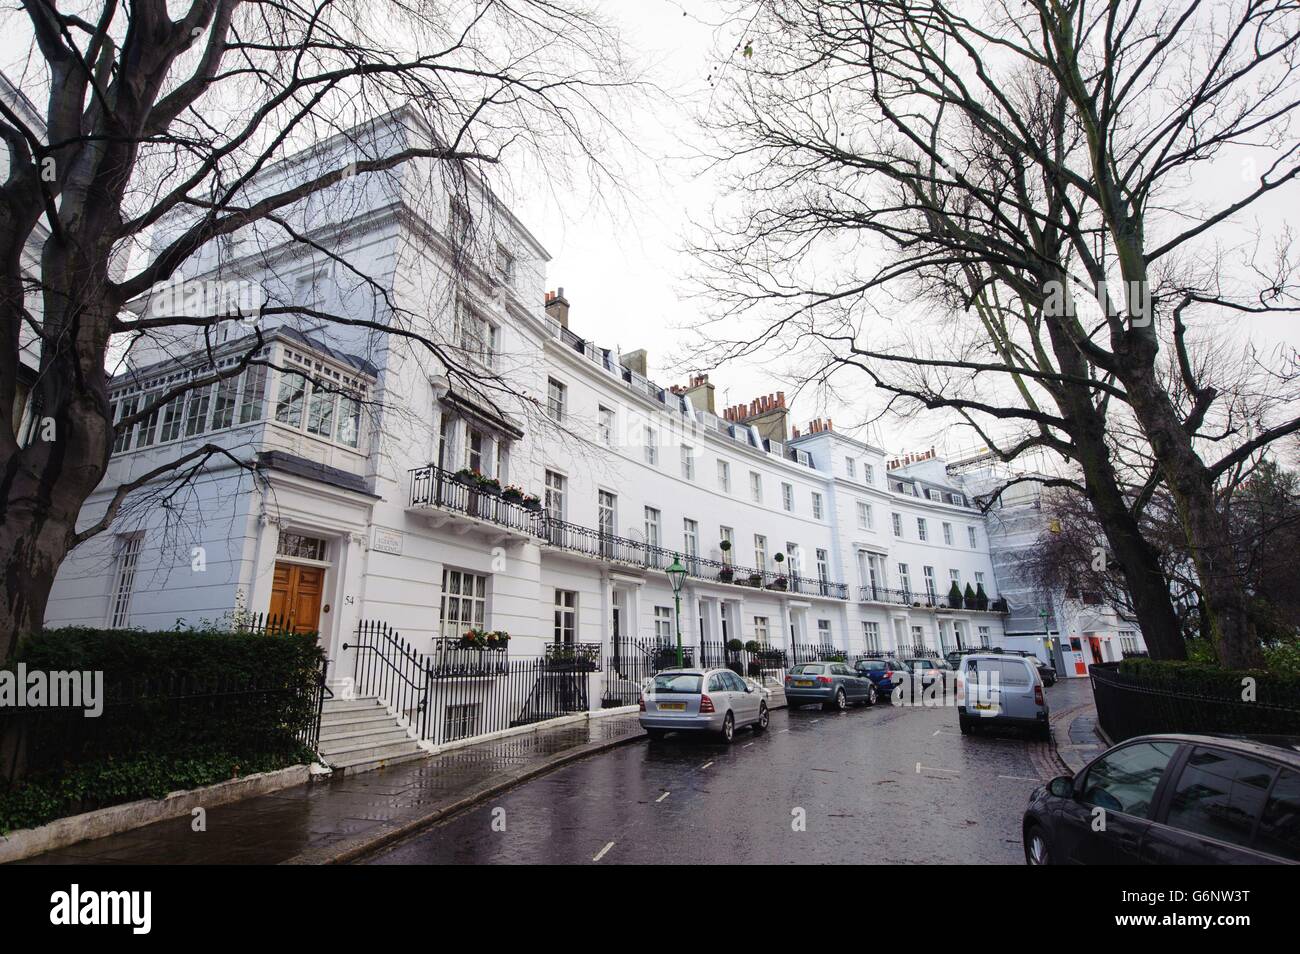 Una visione generale di Egerton Crescent, a Kensington, Londra, che è stato nominato come il rapporto della Lloyds Bank come il posto più caro per vivere, con il quartiere di Kensington e Chelsea che ospita sei delle 10 strade più costose in Inghilterra e Galles. Foto Stock